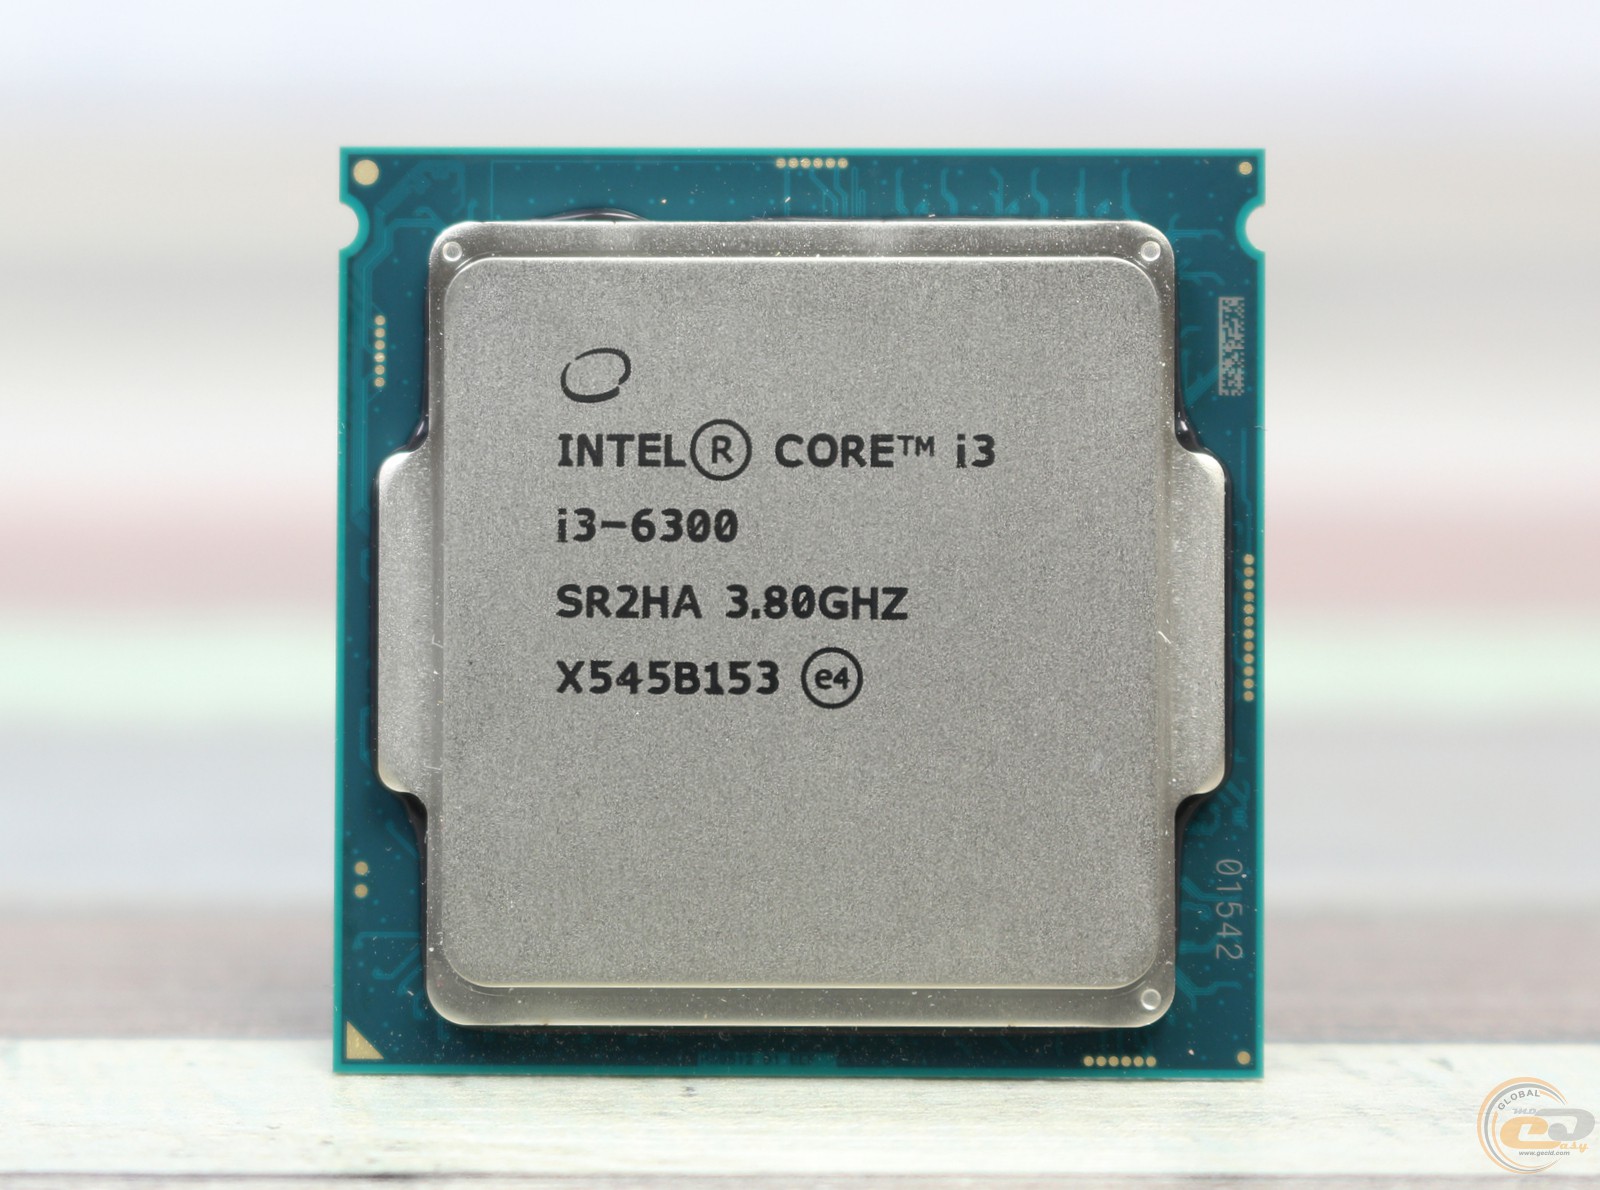 Интел core i3. Intel Core i3 6300. Процессор Intel Core i7-4770 Haswell. Intel Core i3-6300 3,8 ГГЦ. Процессор Интел кор ай 3.